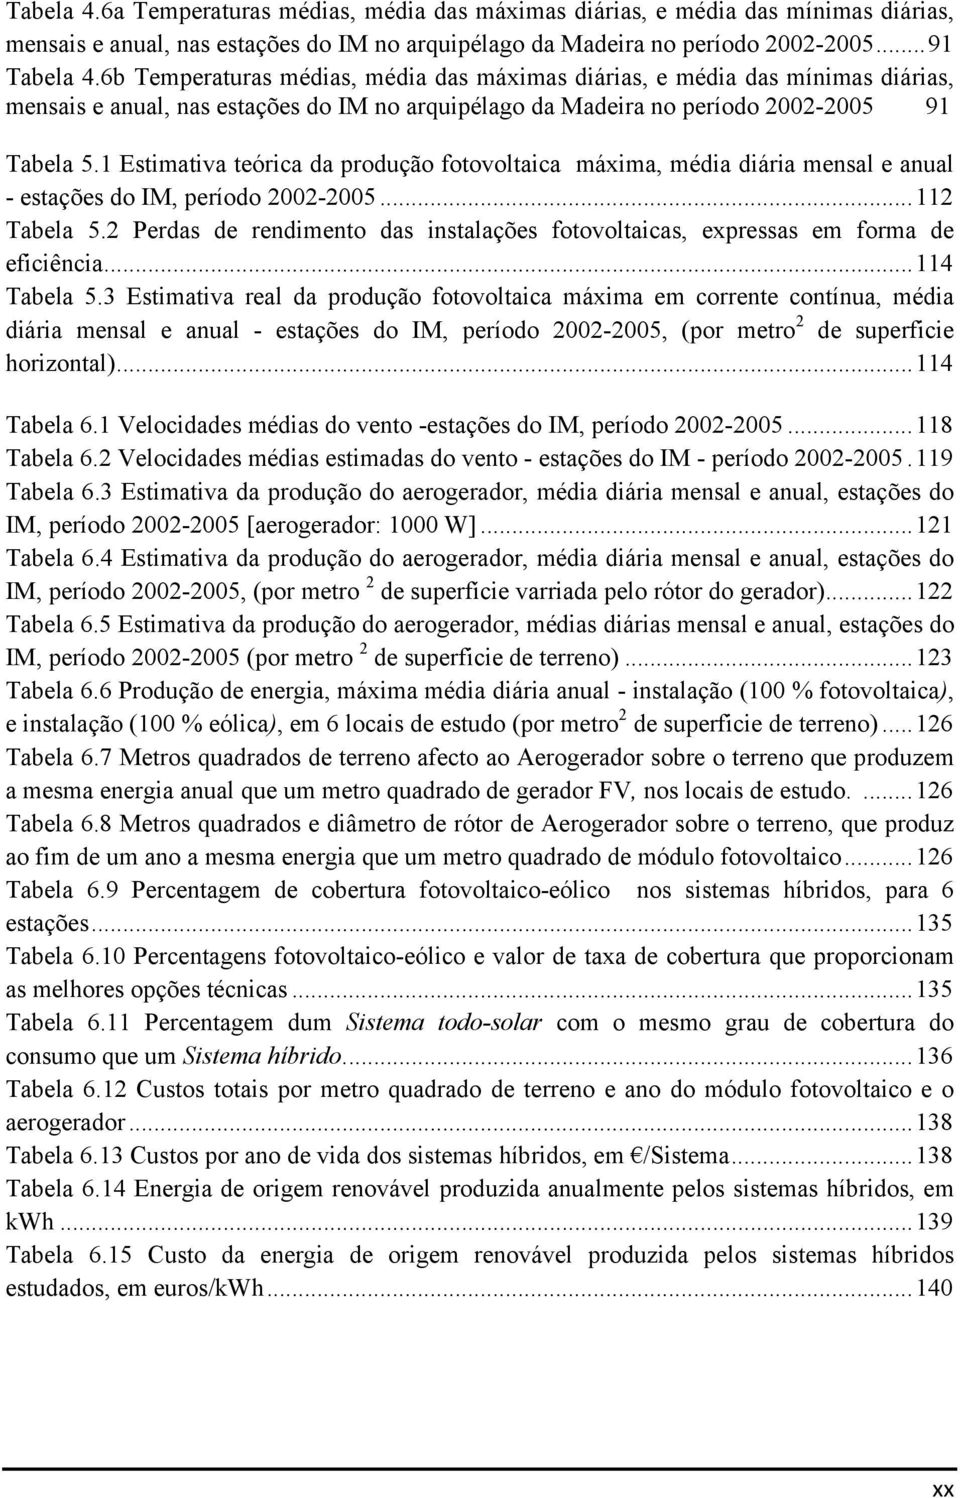 1 Estimativa teórica da produção fotovoltaica máxima, média diária mensal e anual - estações do IM, período 2002-2005... 112 Tabela 5.